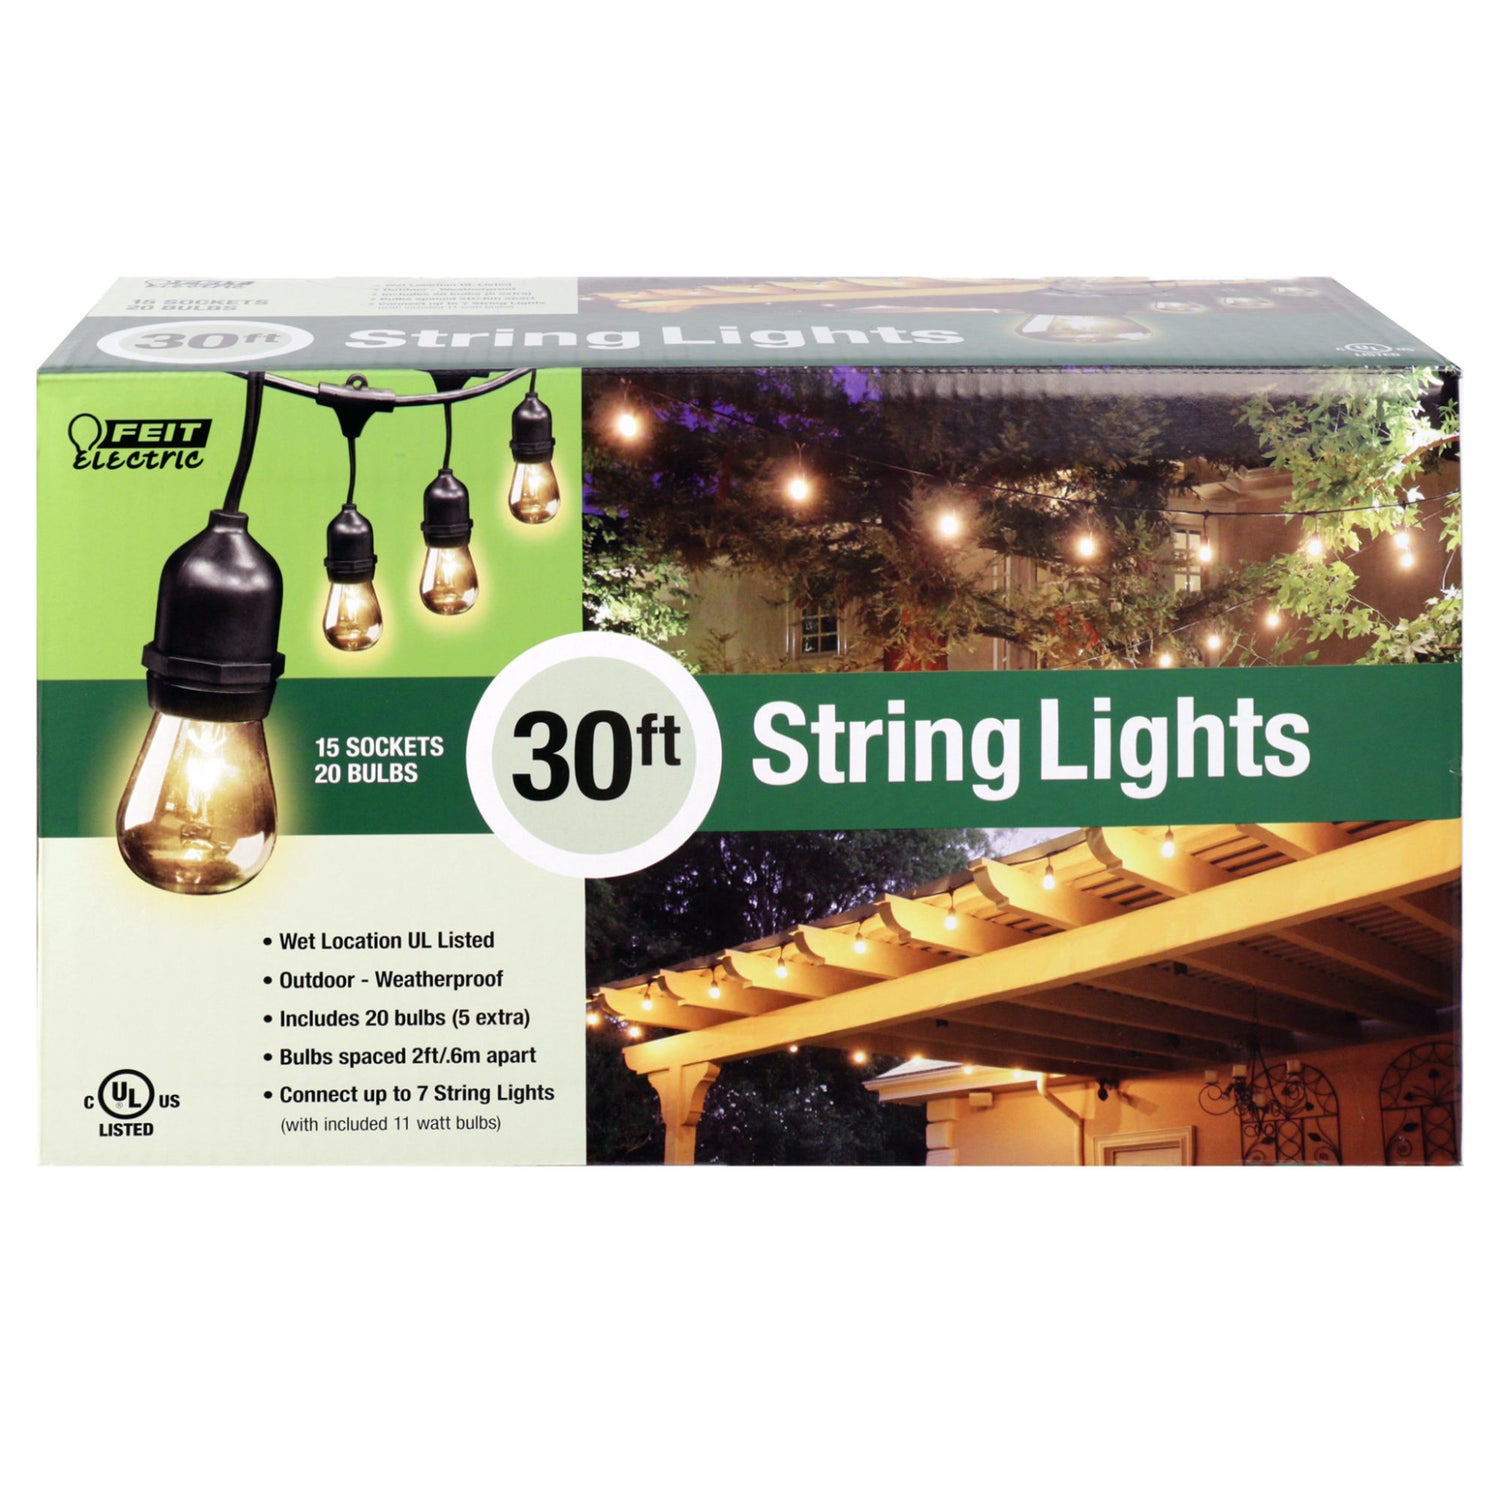 30 ft. String Lights